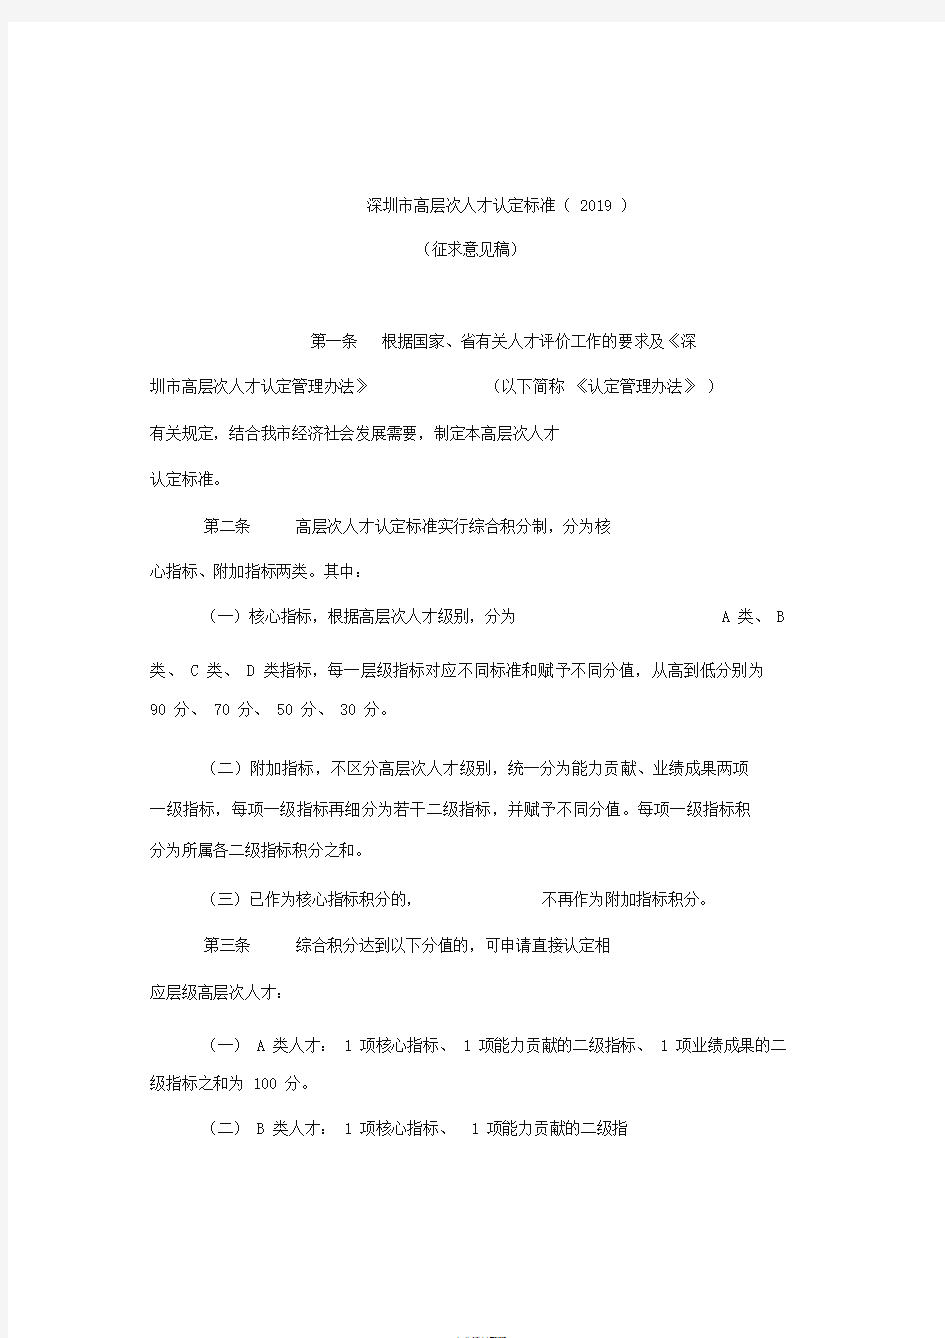 《深圳市高层次人才认定标准2019(征求意见稿)》